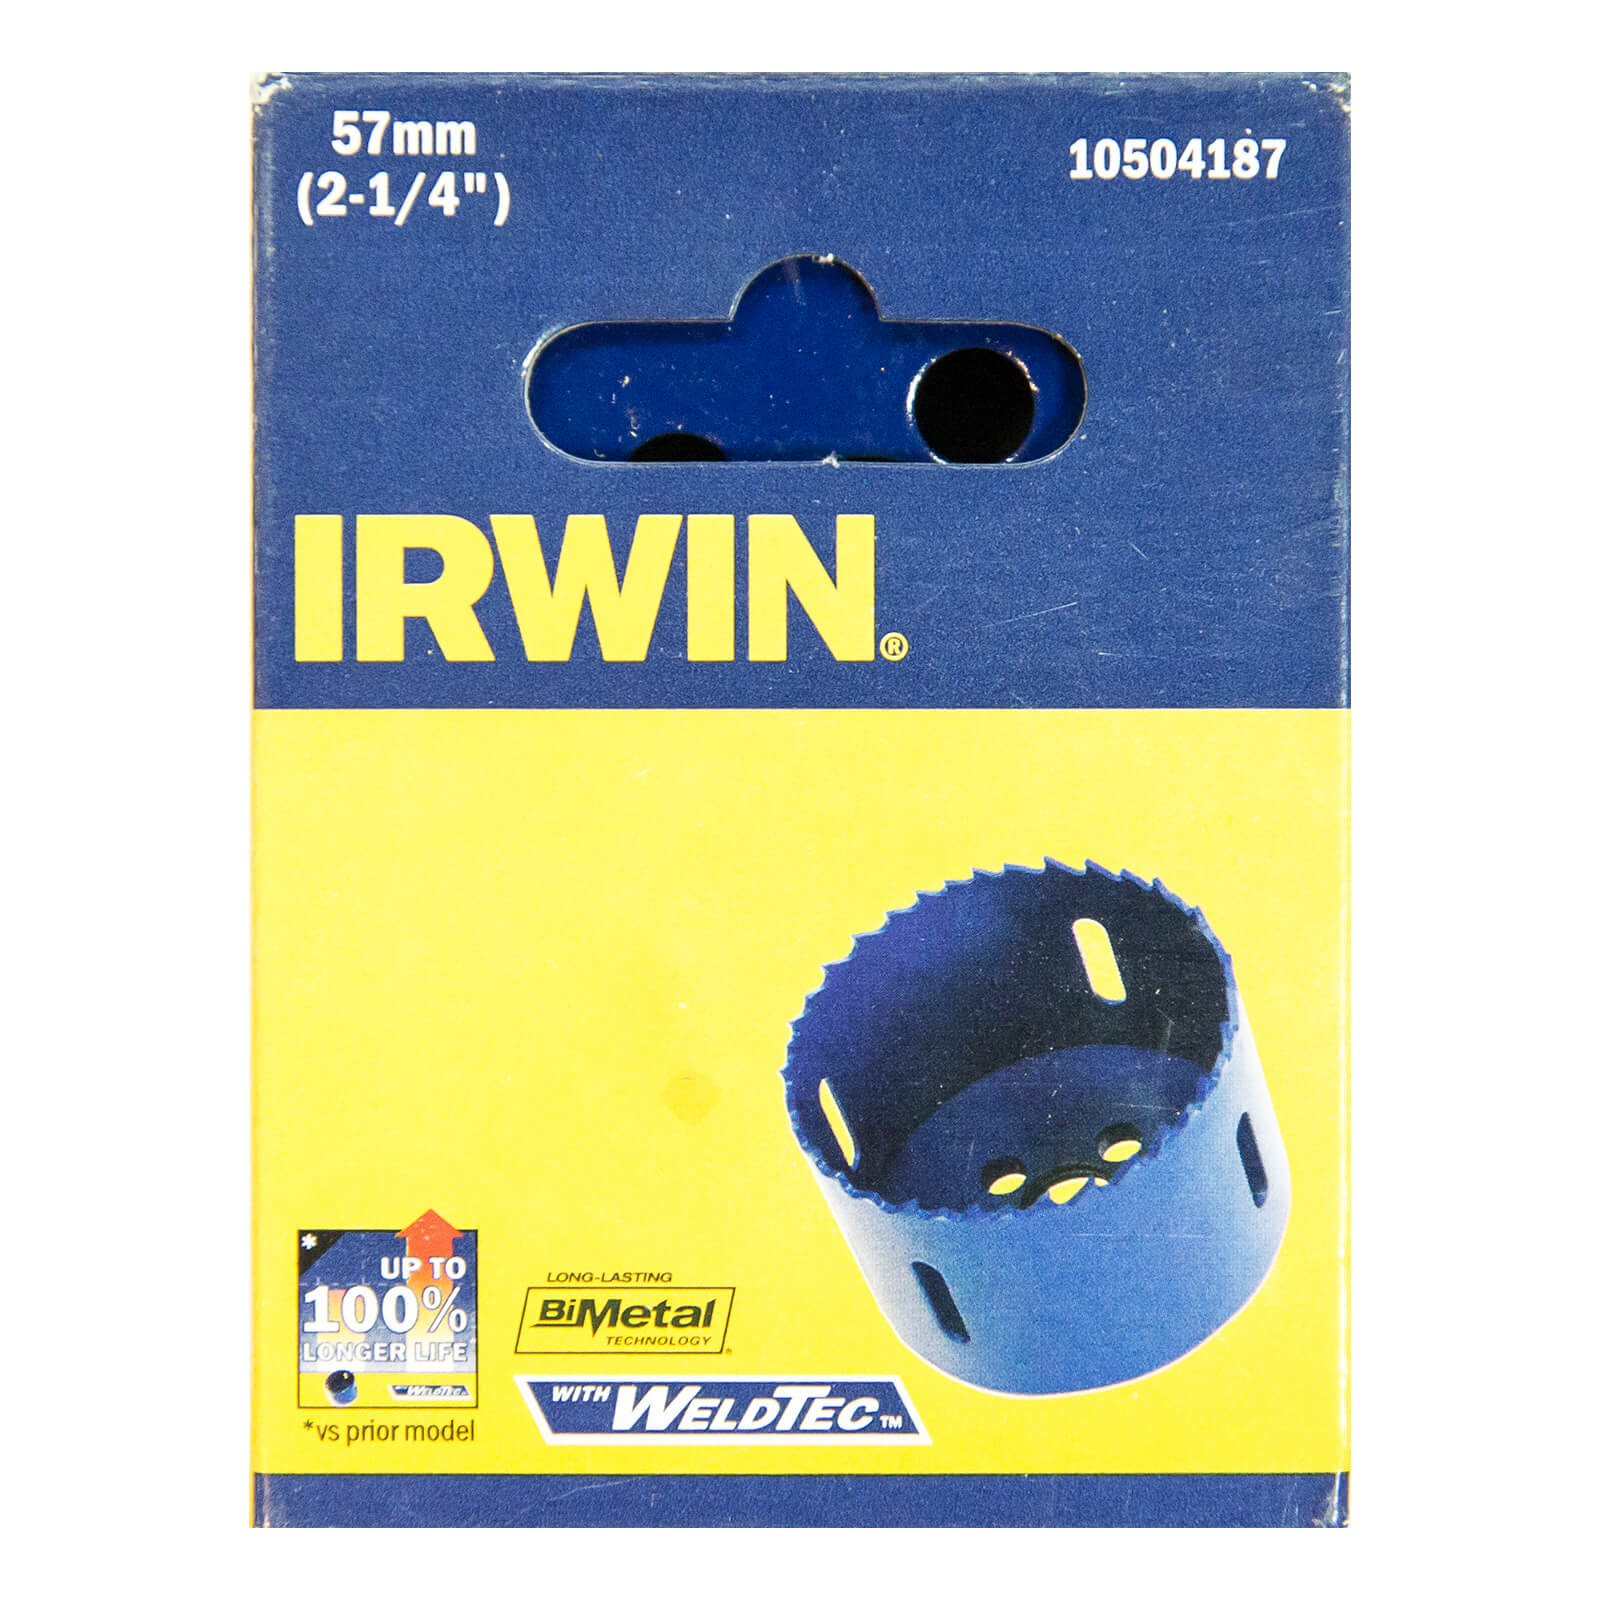 IRWIN Bi-Metal Hole Saw - 57mm